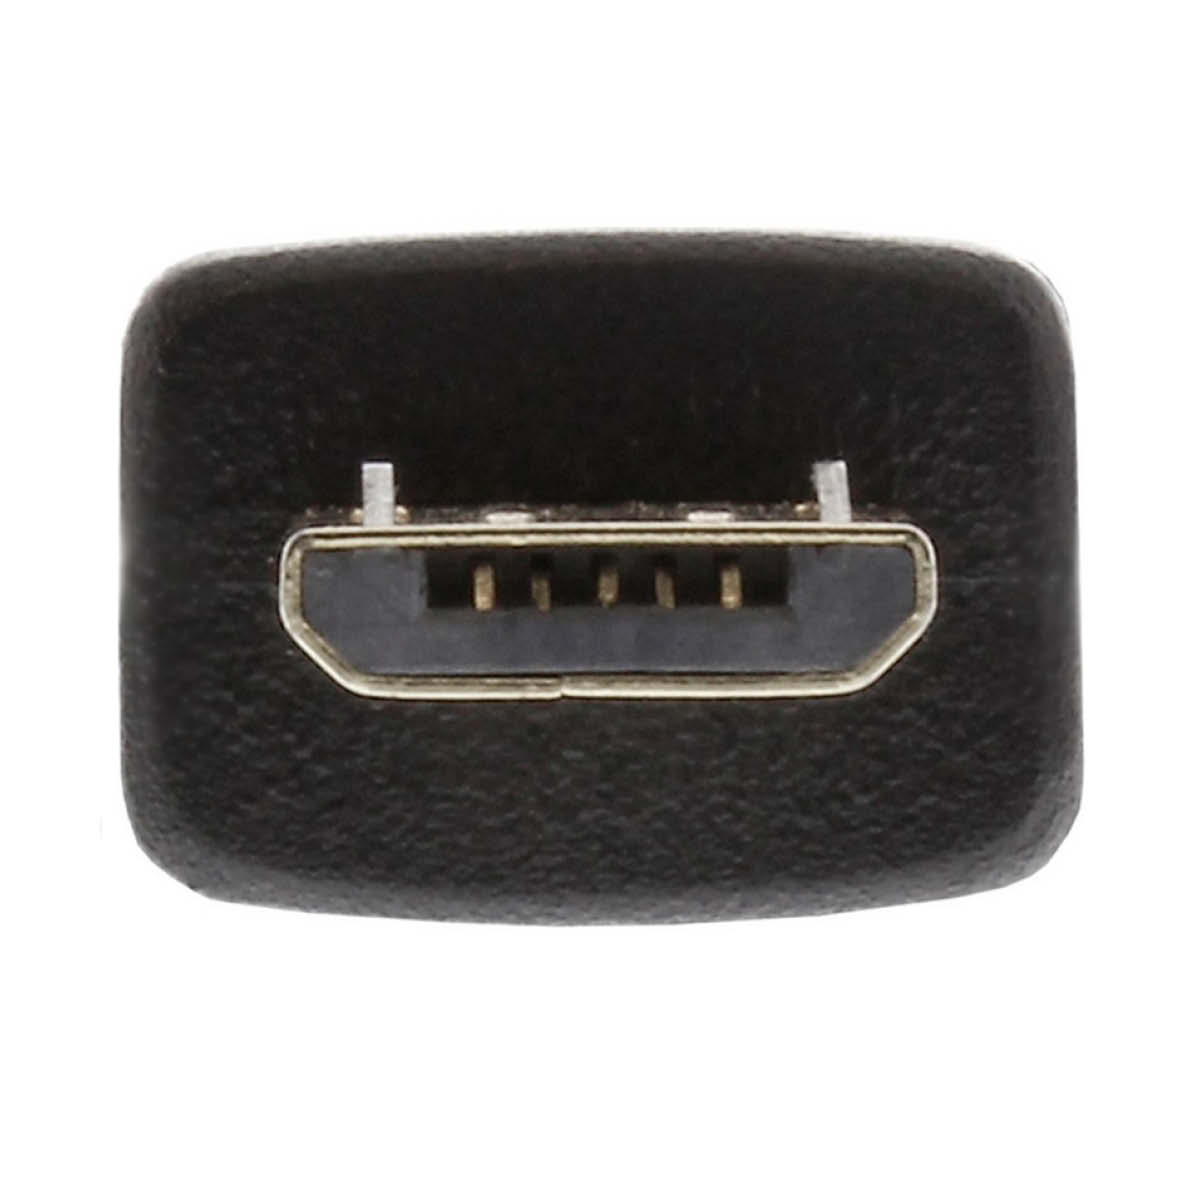 InLine Micro USB 2.0 Kabel 3m